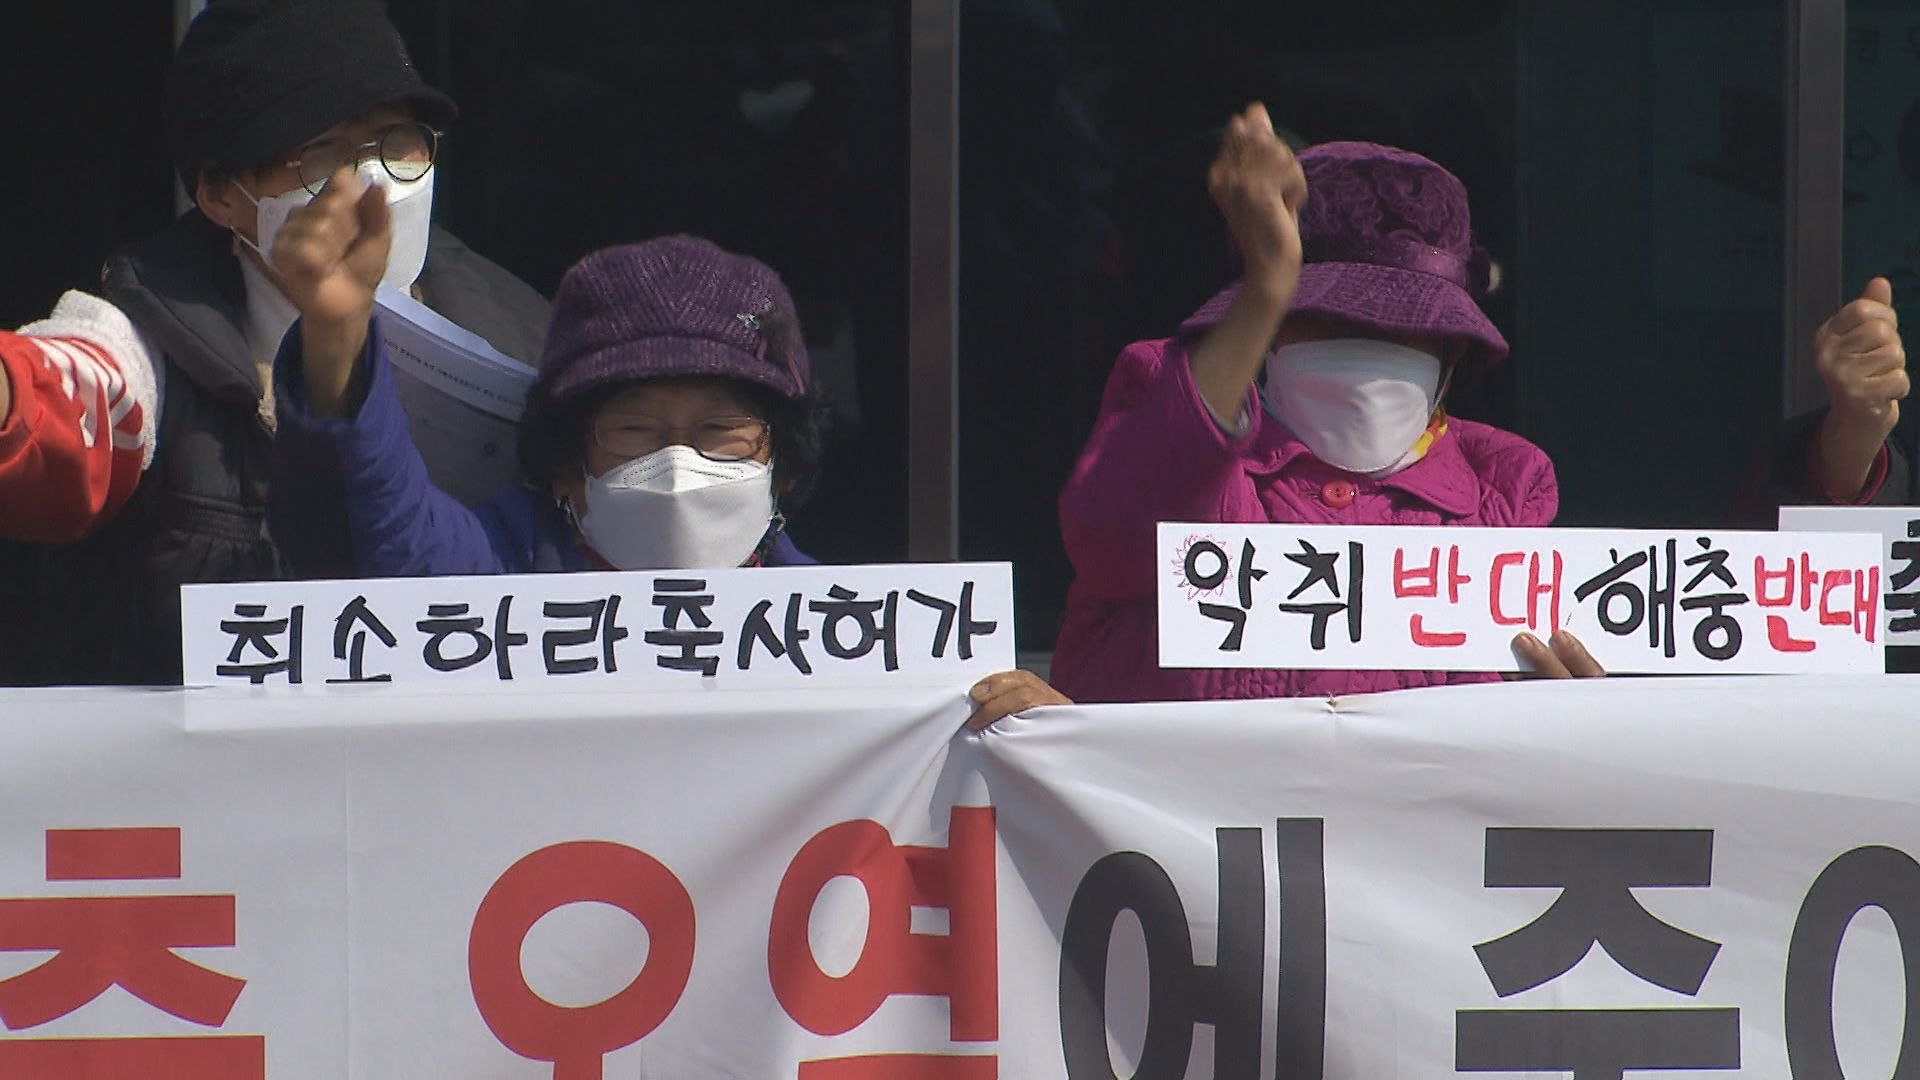  전북 고창군 남계마을 주민들의 축사 건축 허가 취소 촉구 시위 